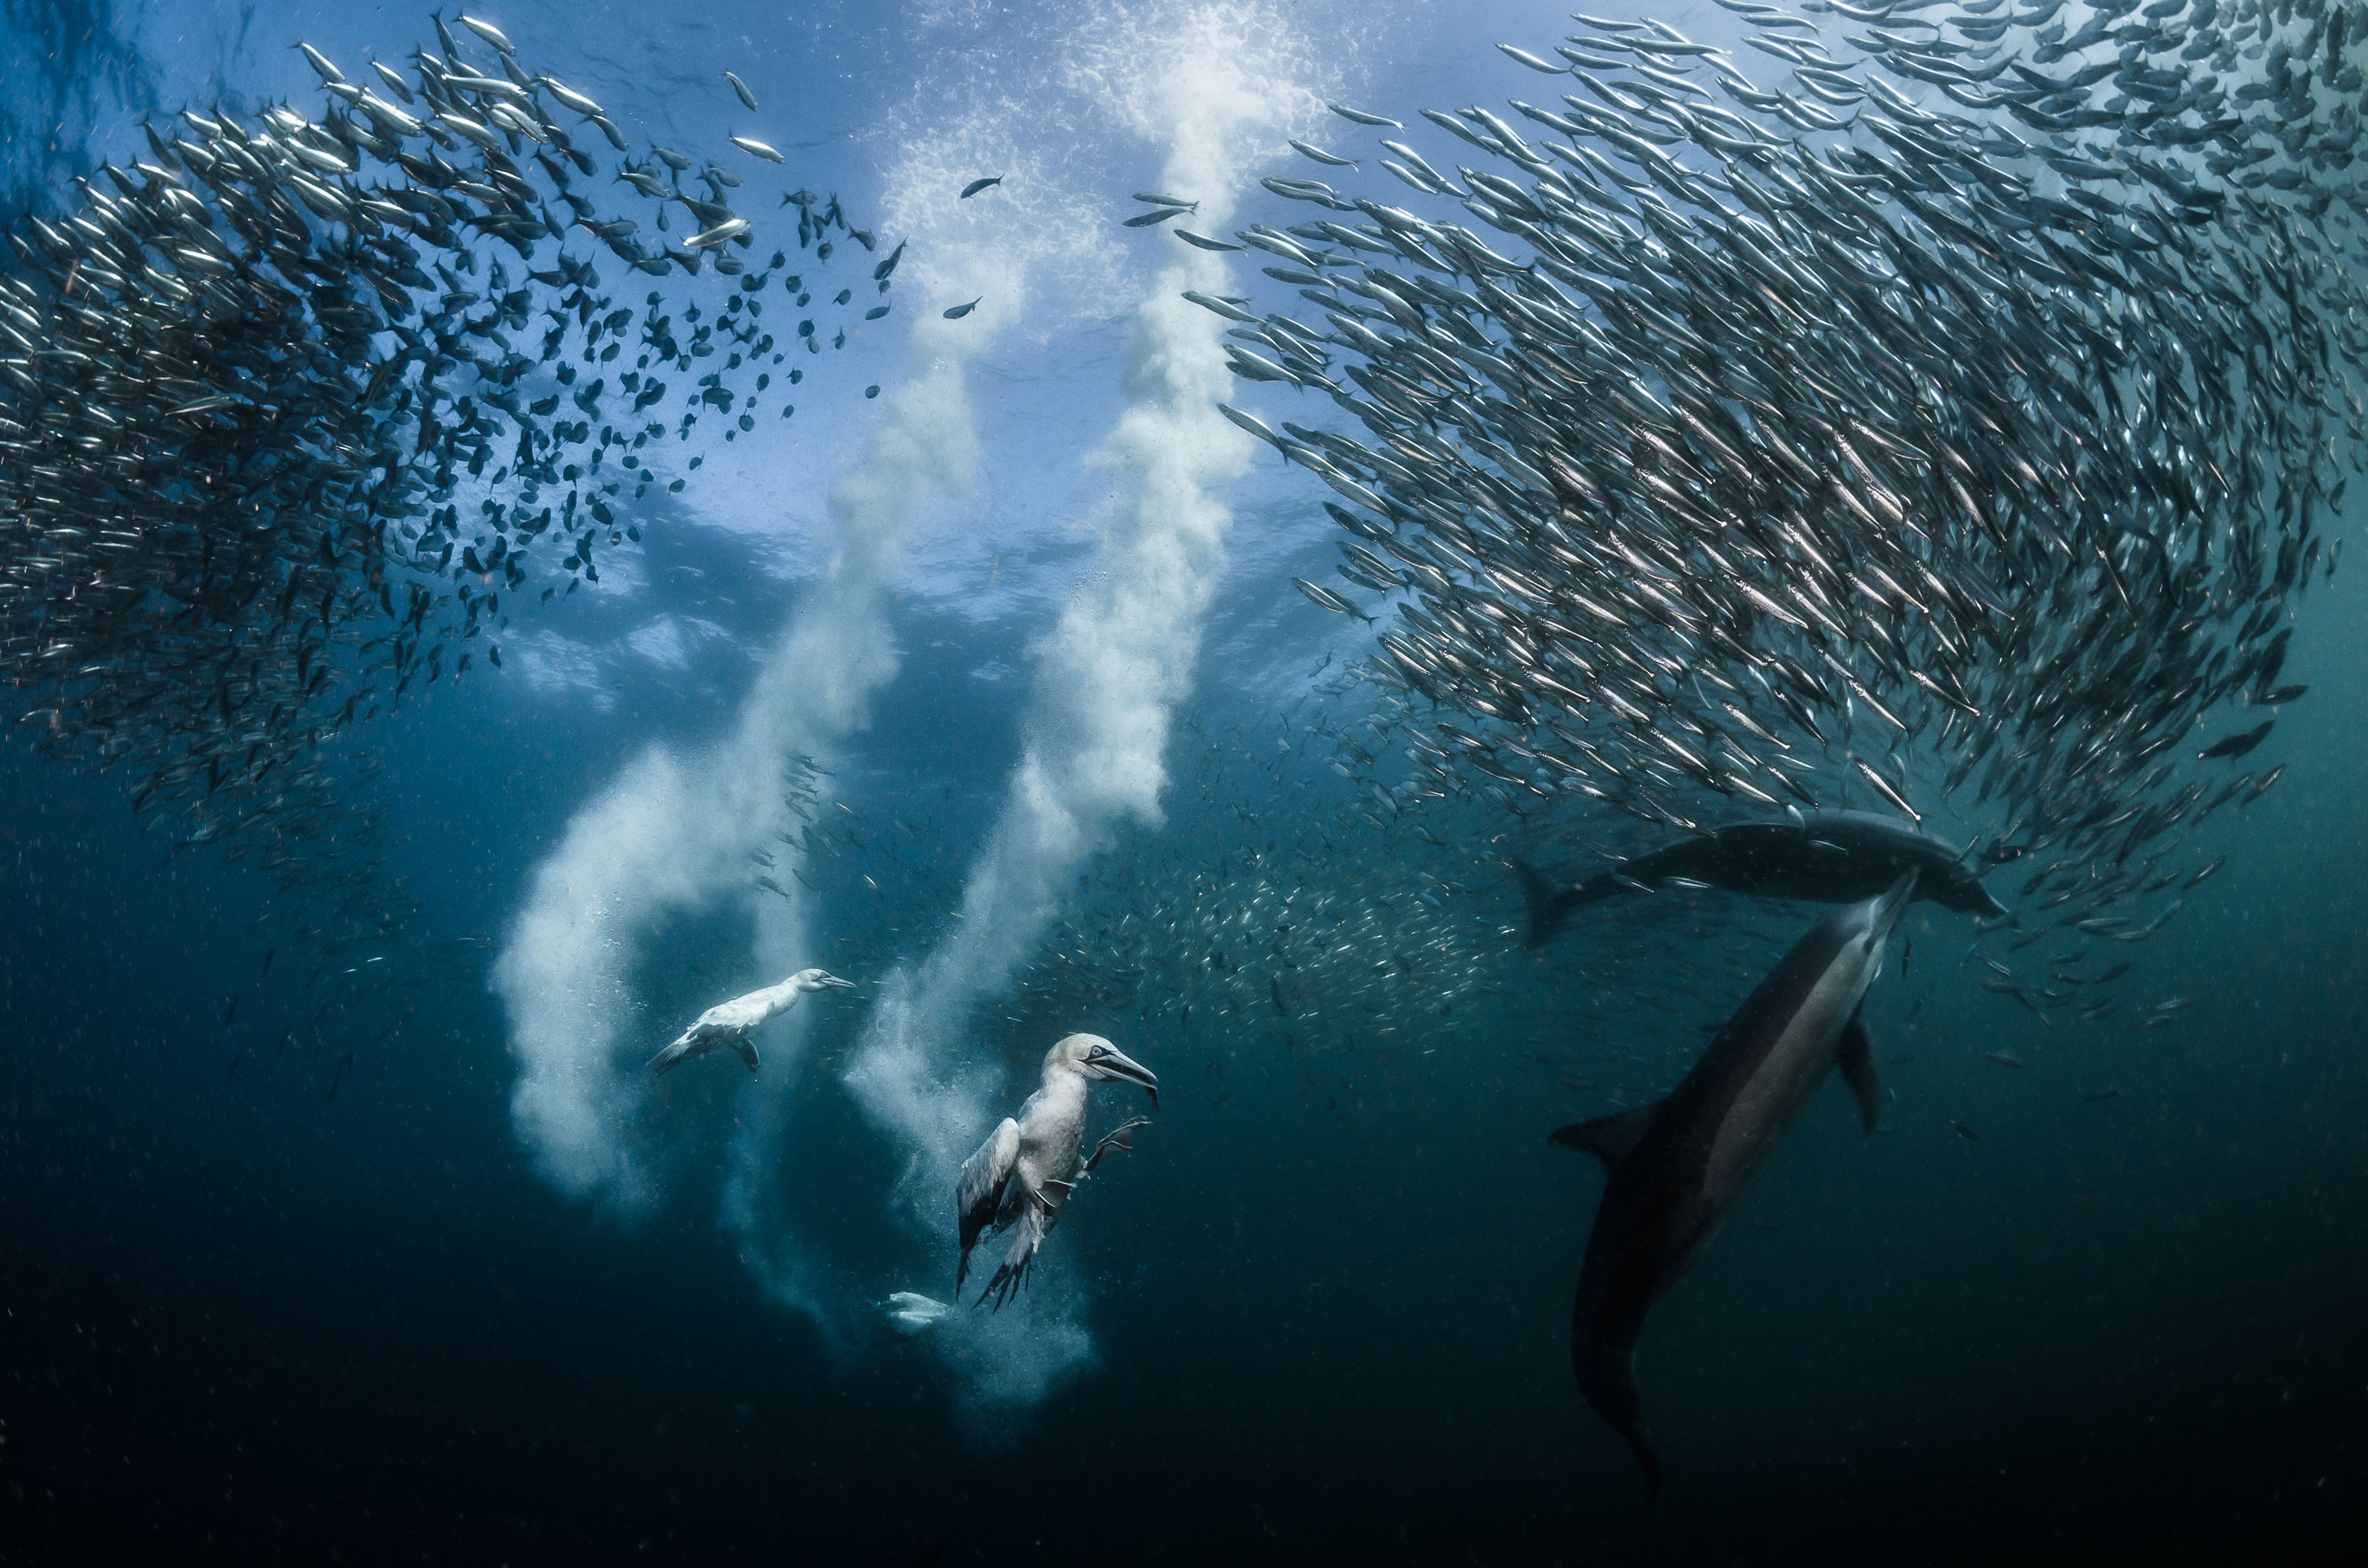 Географик. Победители фотоконкурса National Geographic. Морские обитатели моря. Лучшие снимки дикой природы. Стаи рыб в океане.